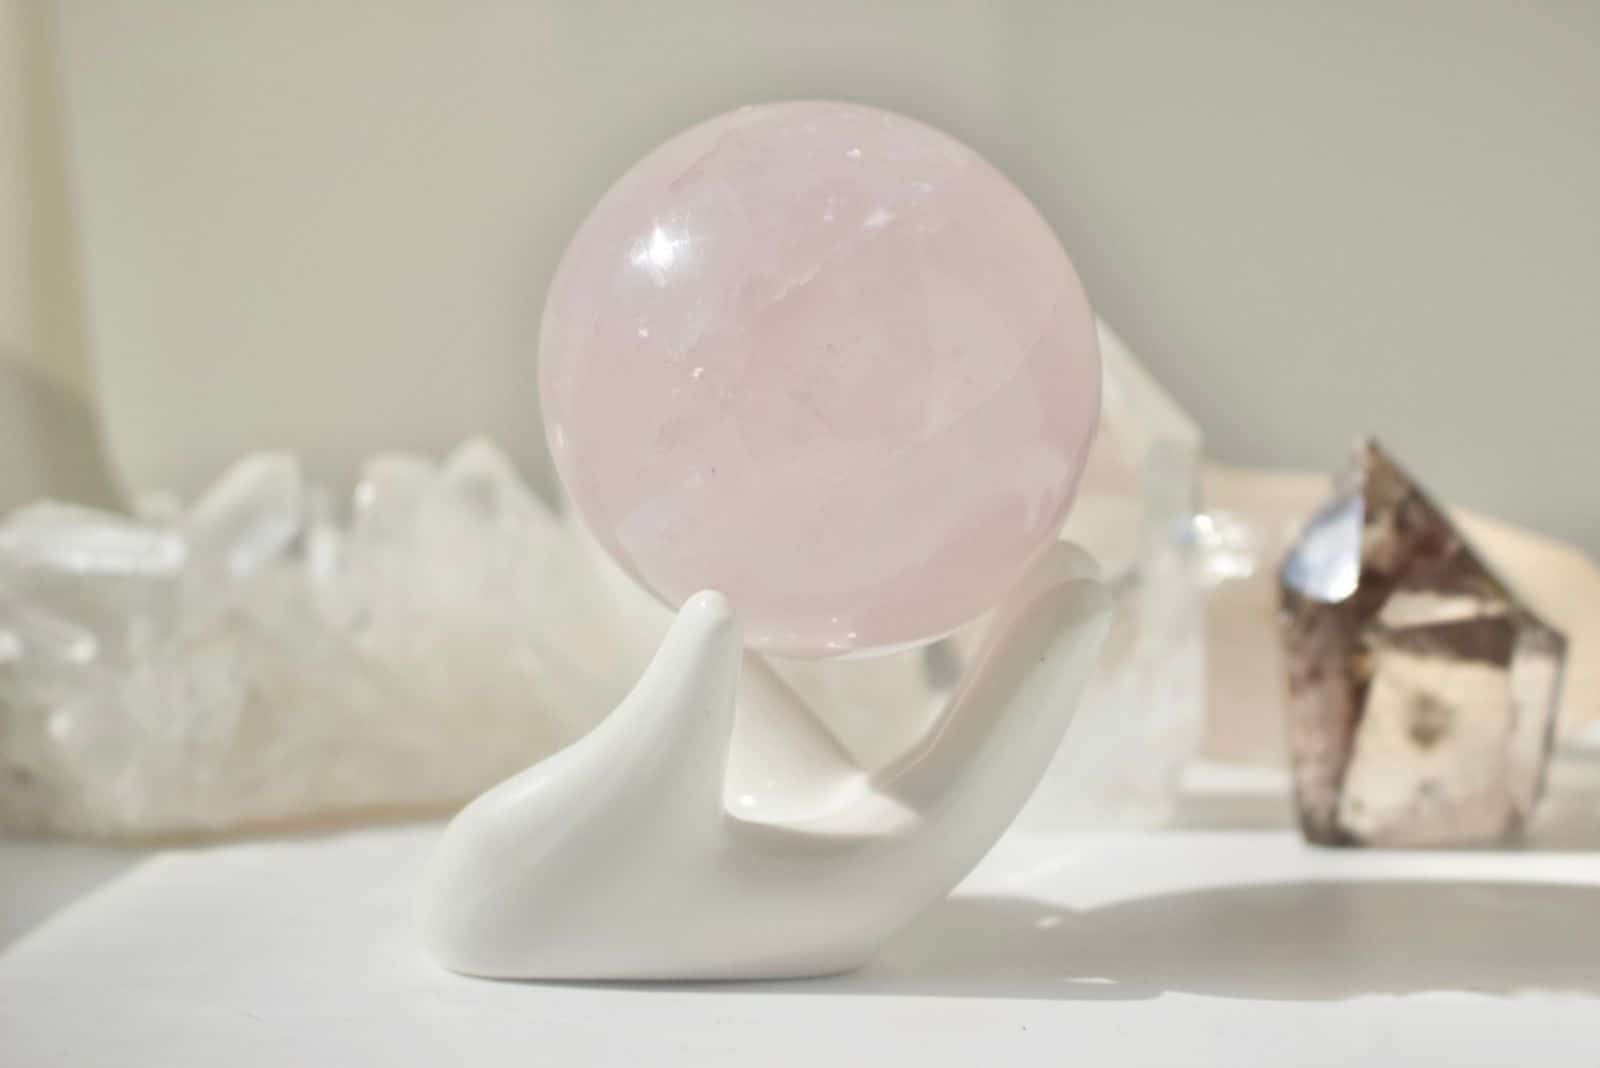 Sphère de quartz rose sur la main en porcelaine blanche